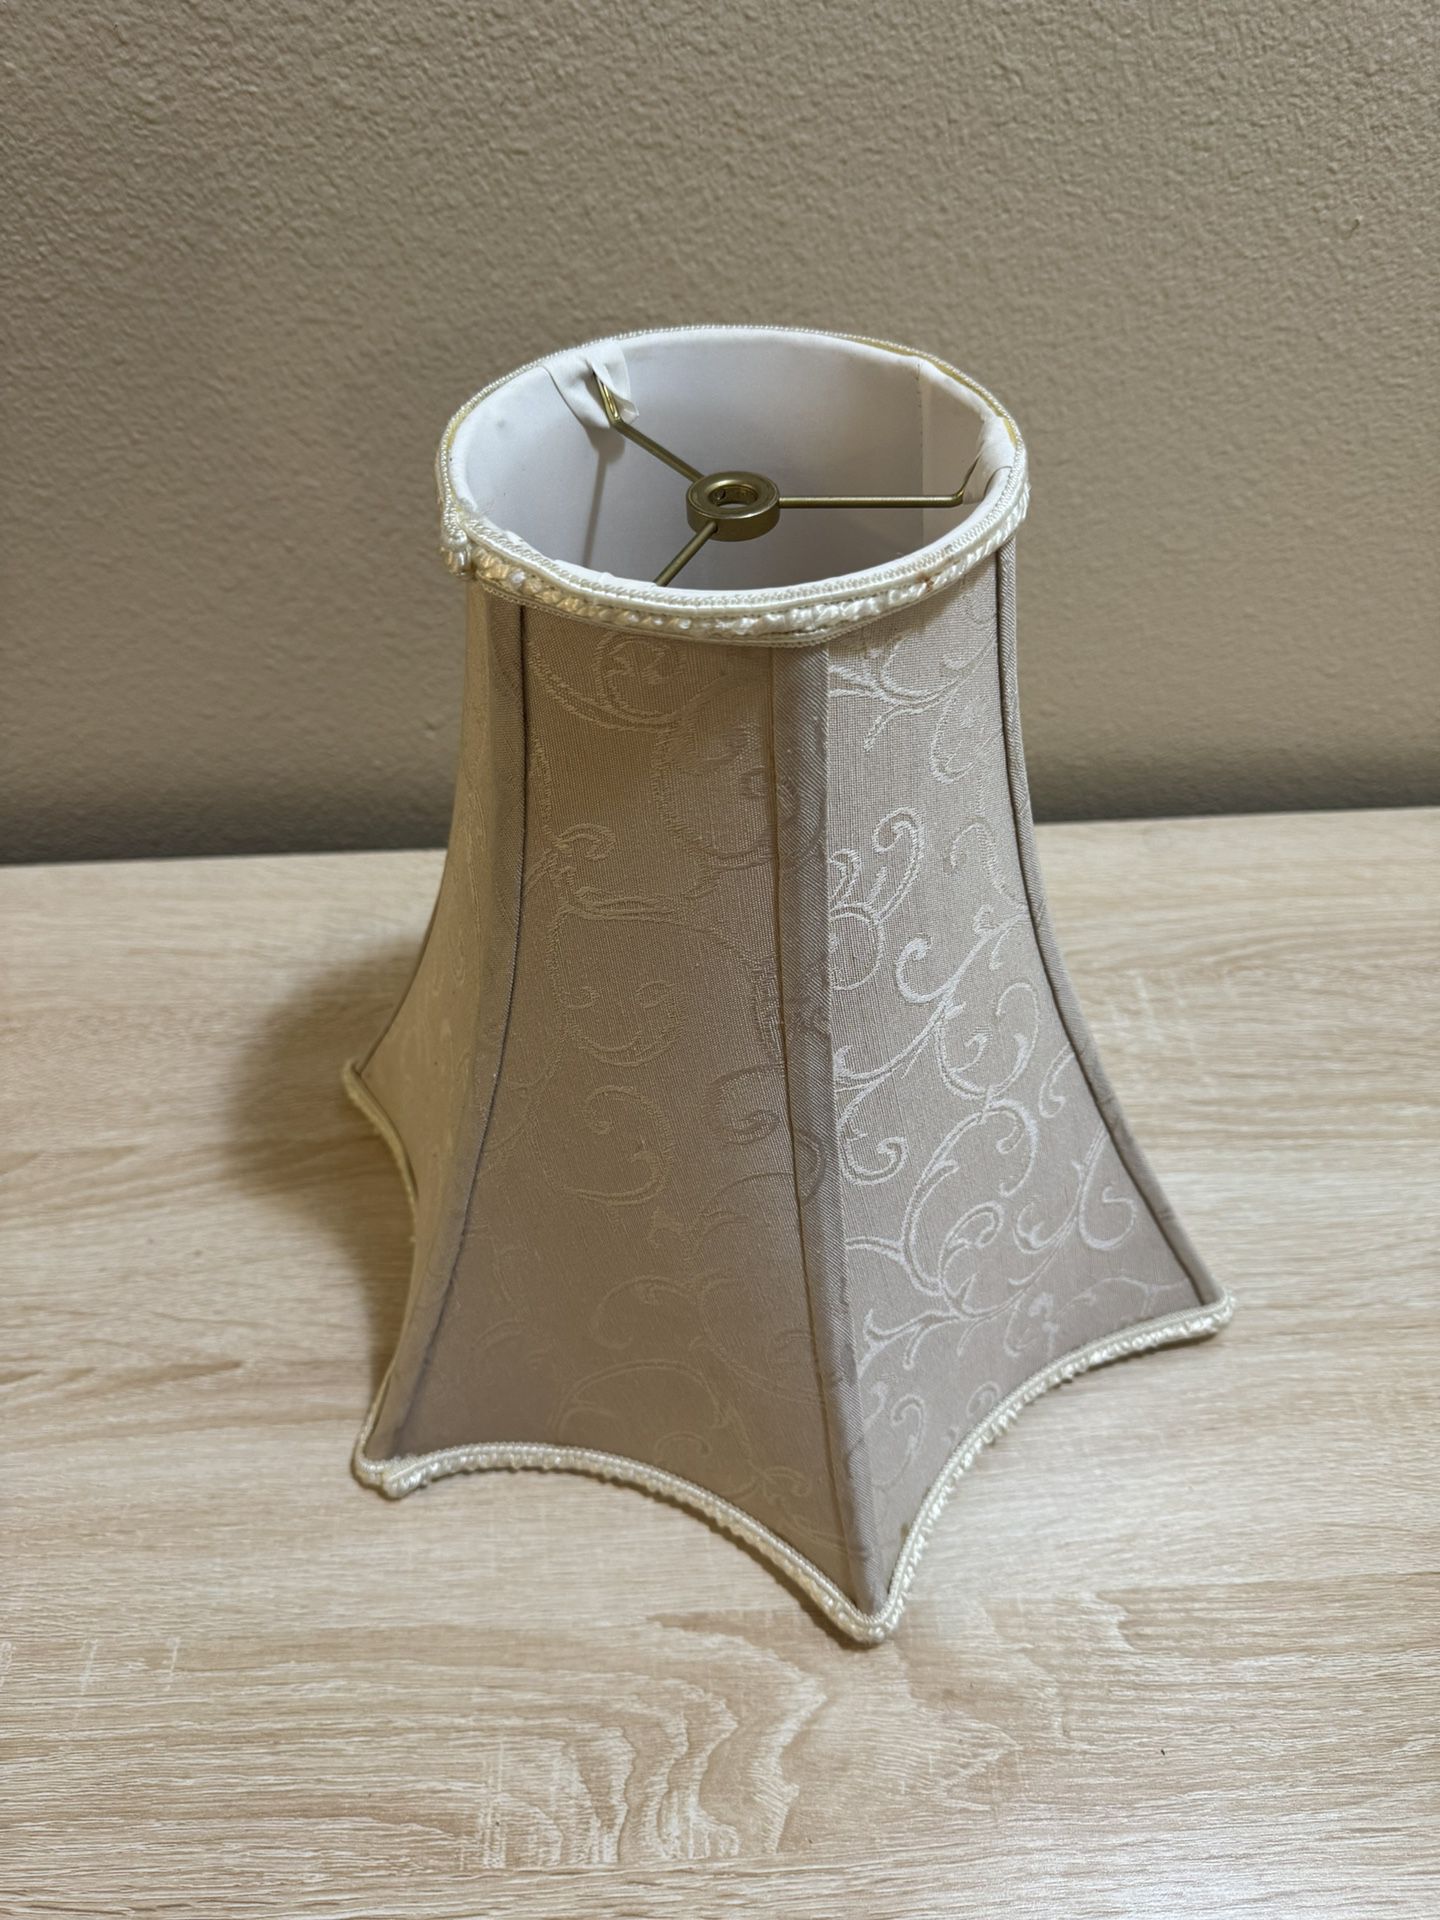 Antique Designer Lamp Shade 12x13.5x5.5”